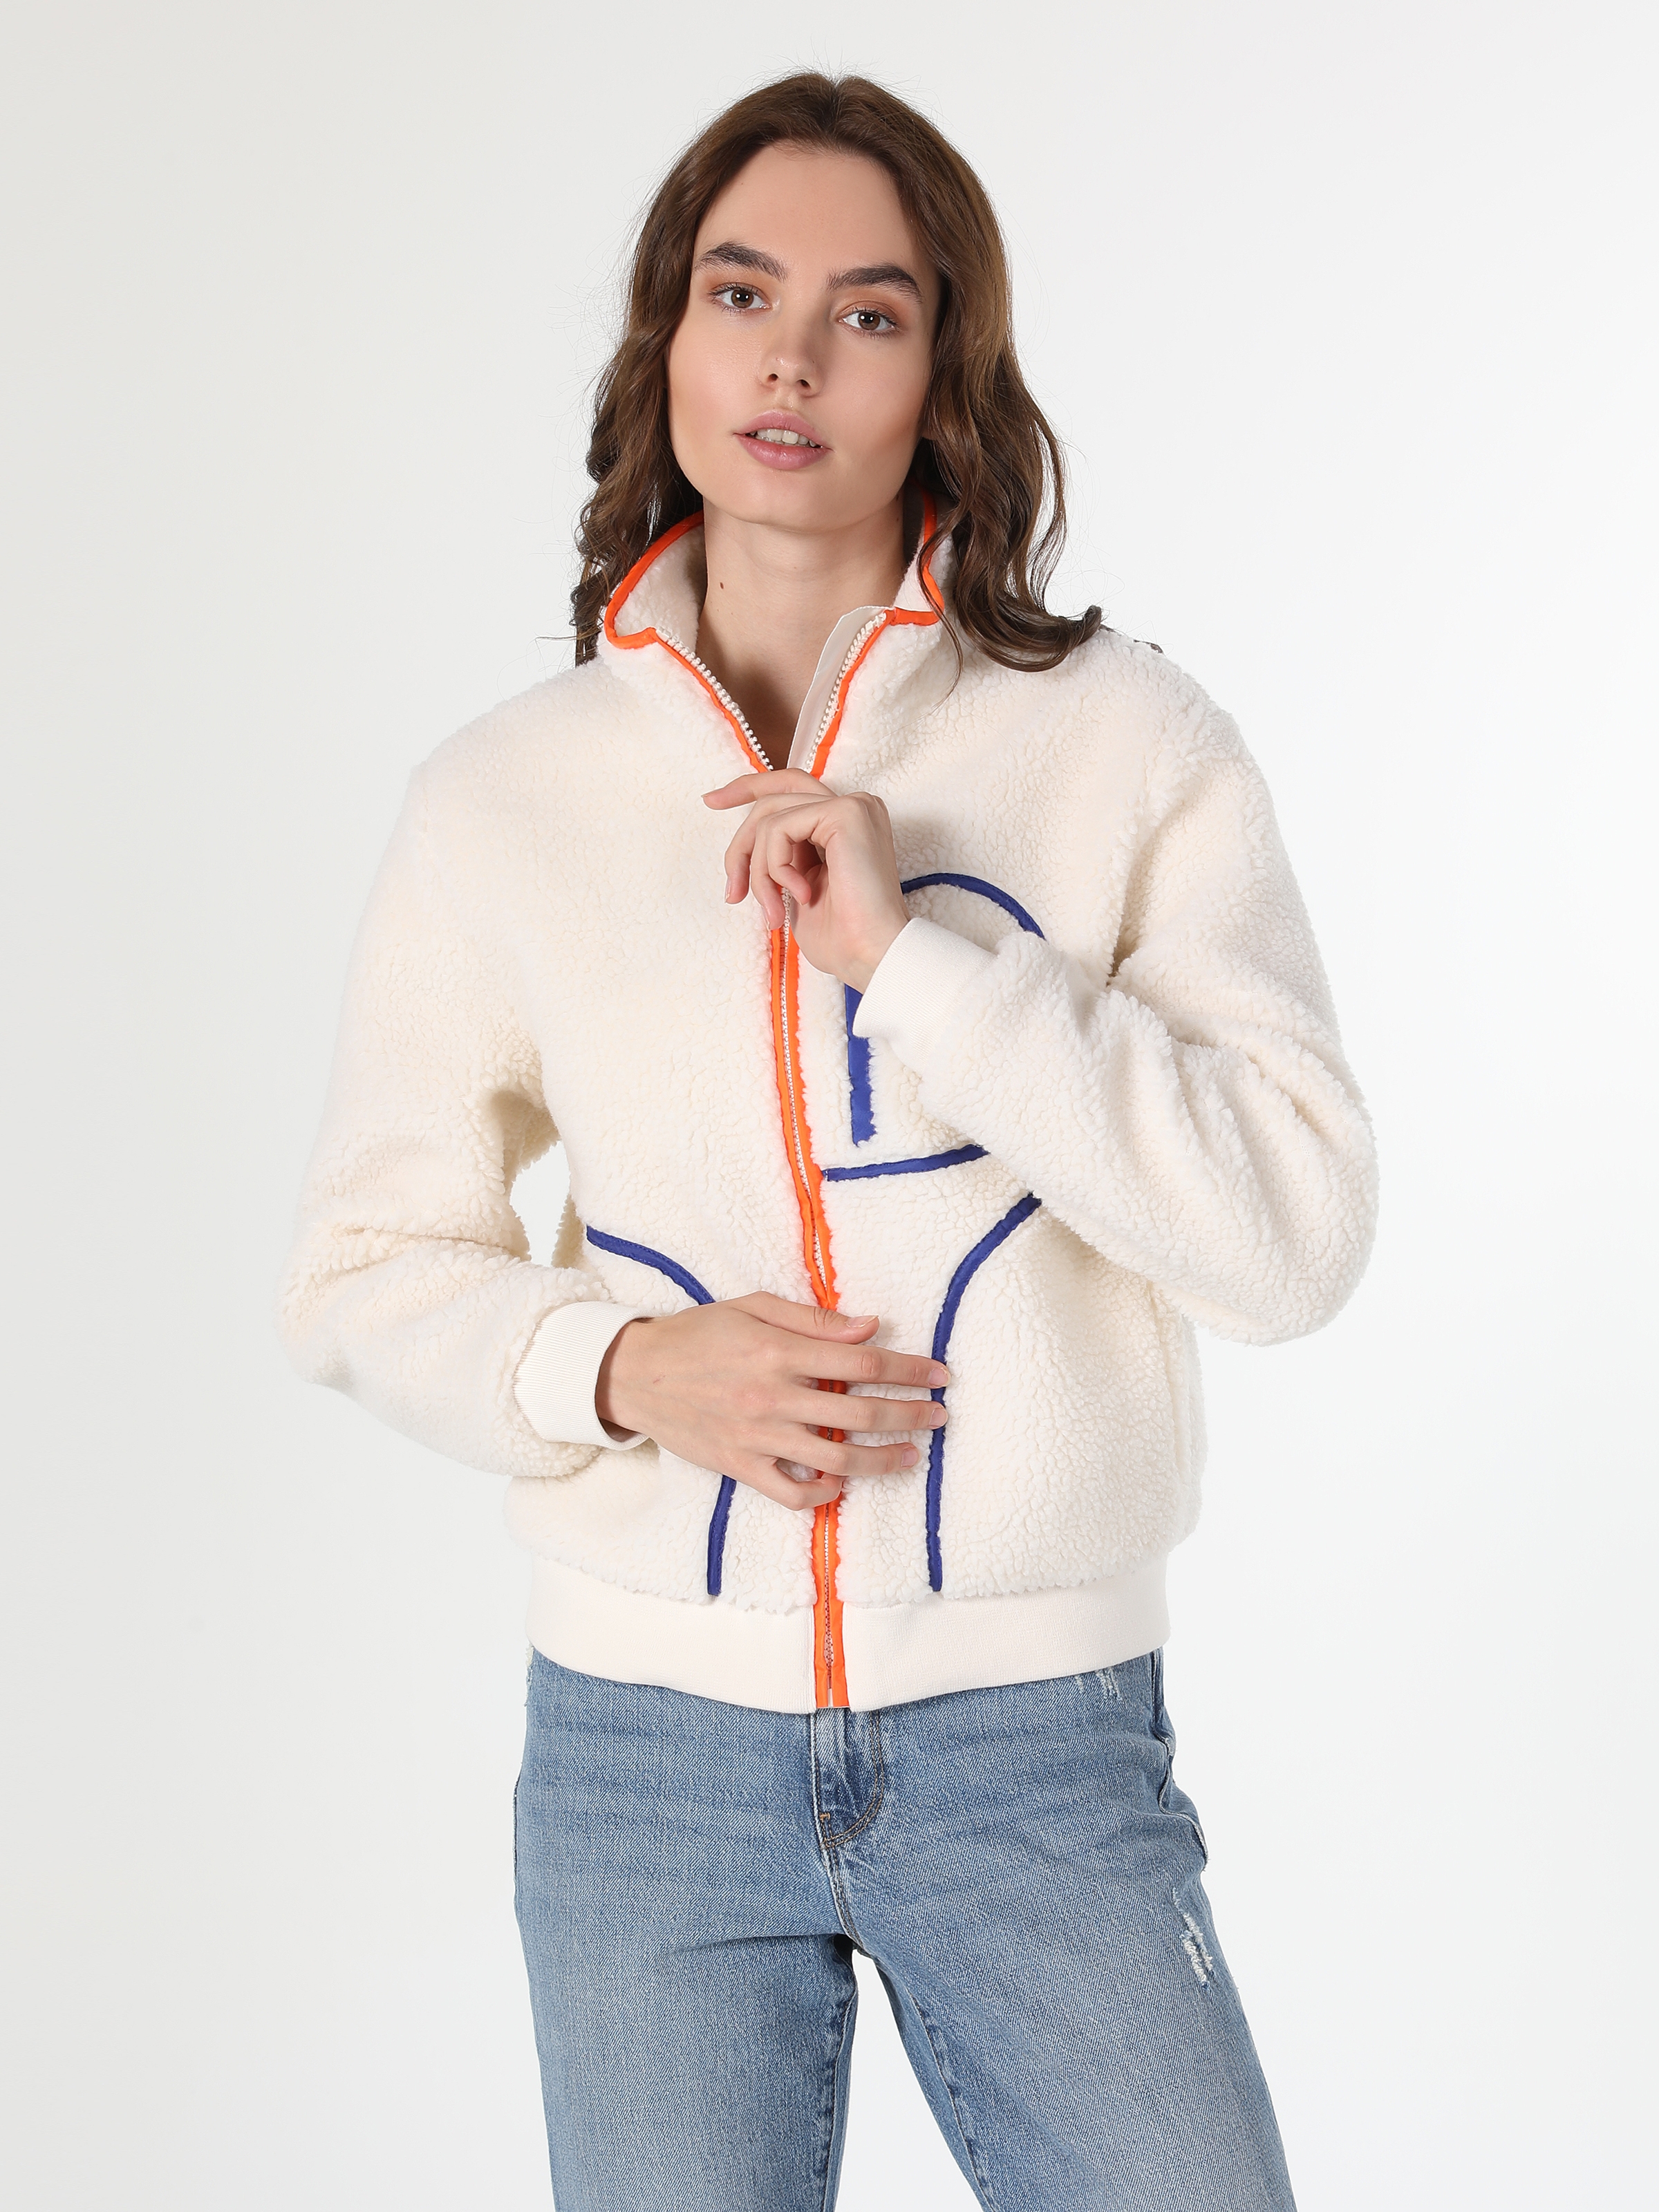 Afficher les détails de Manteau Femme Blanc Zippé À Motifs Coupe Régulière